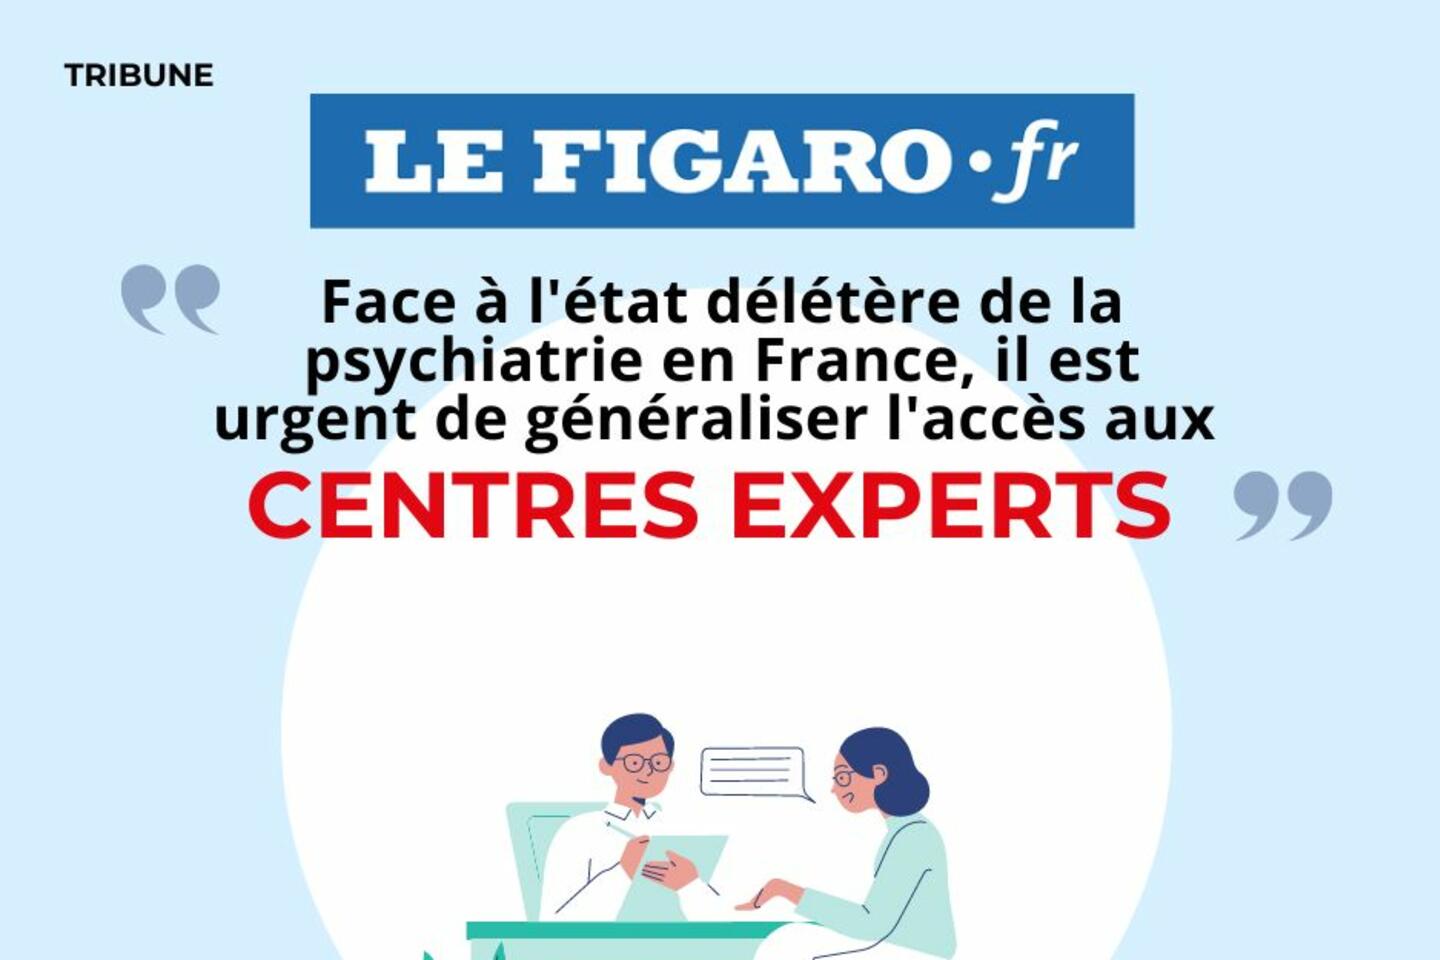 Face à l’état délétère de la psychiatrie en France, il est urgent de généraliser l’accès aux Centres Experts